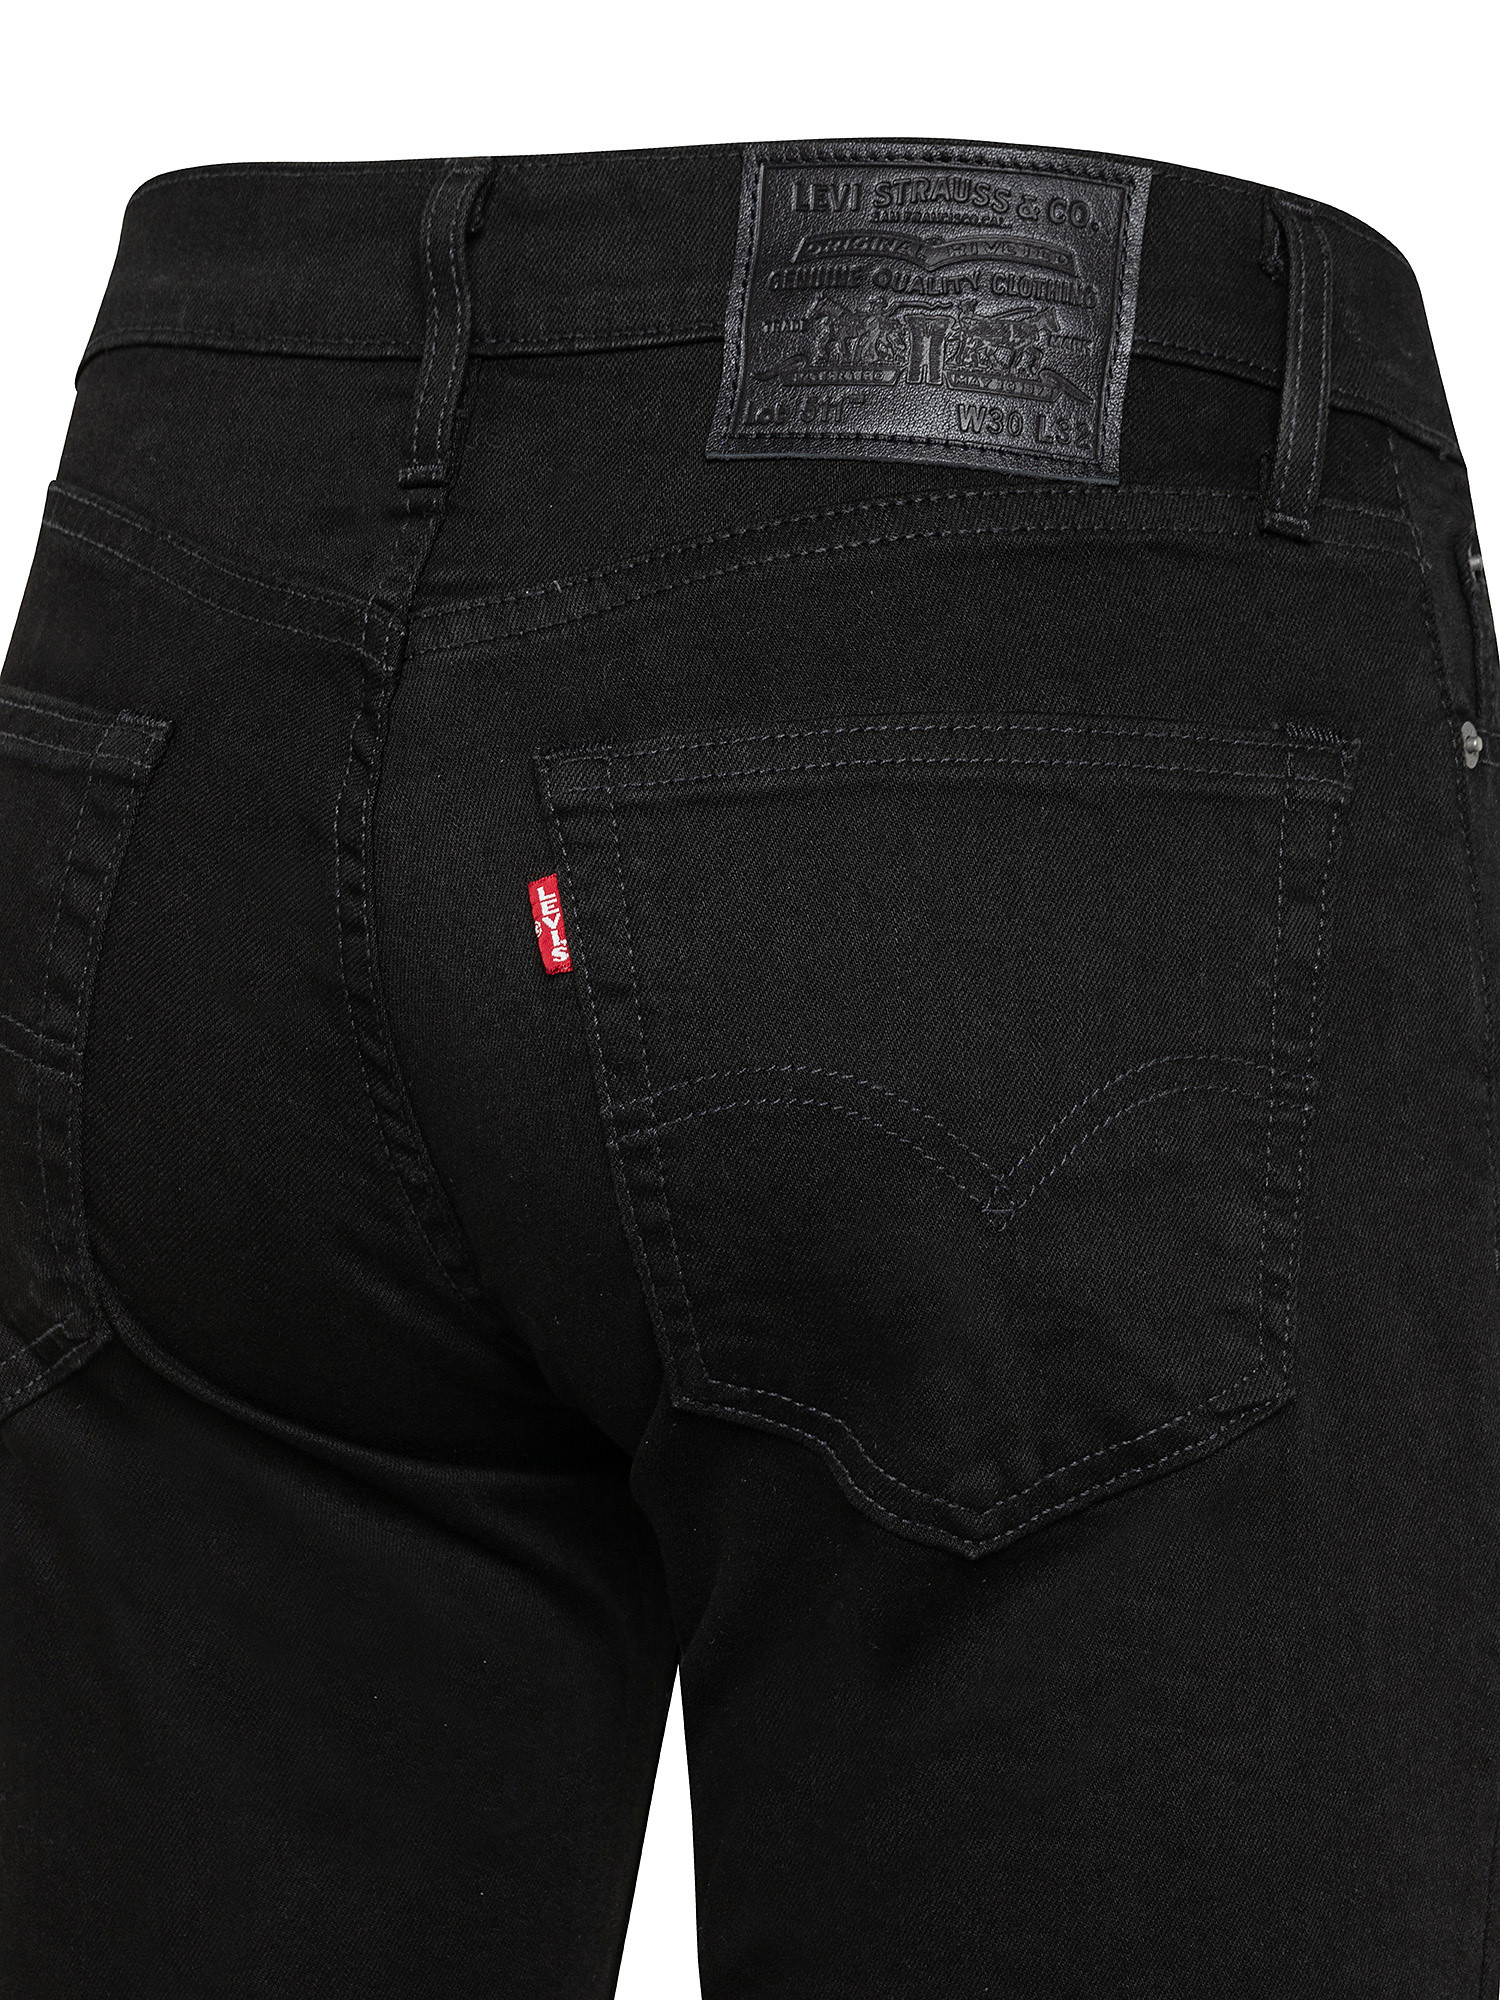 Five pocket jeans, Black, large image number 2